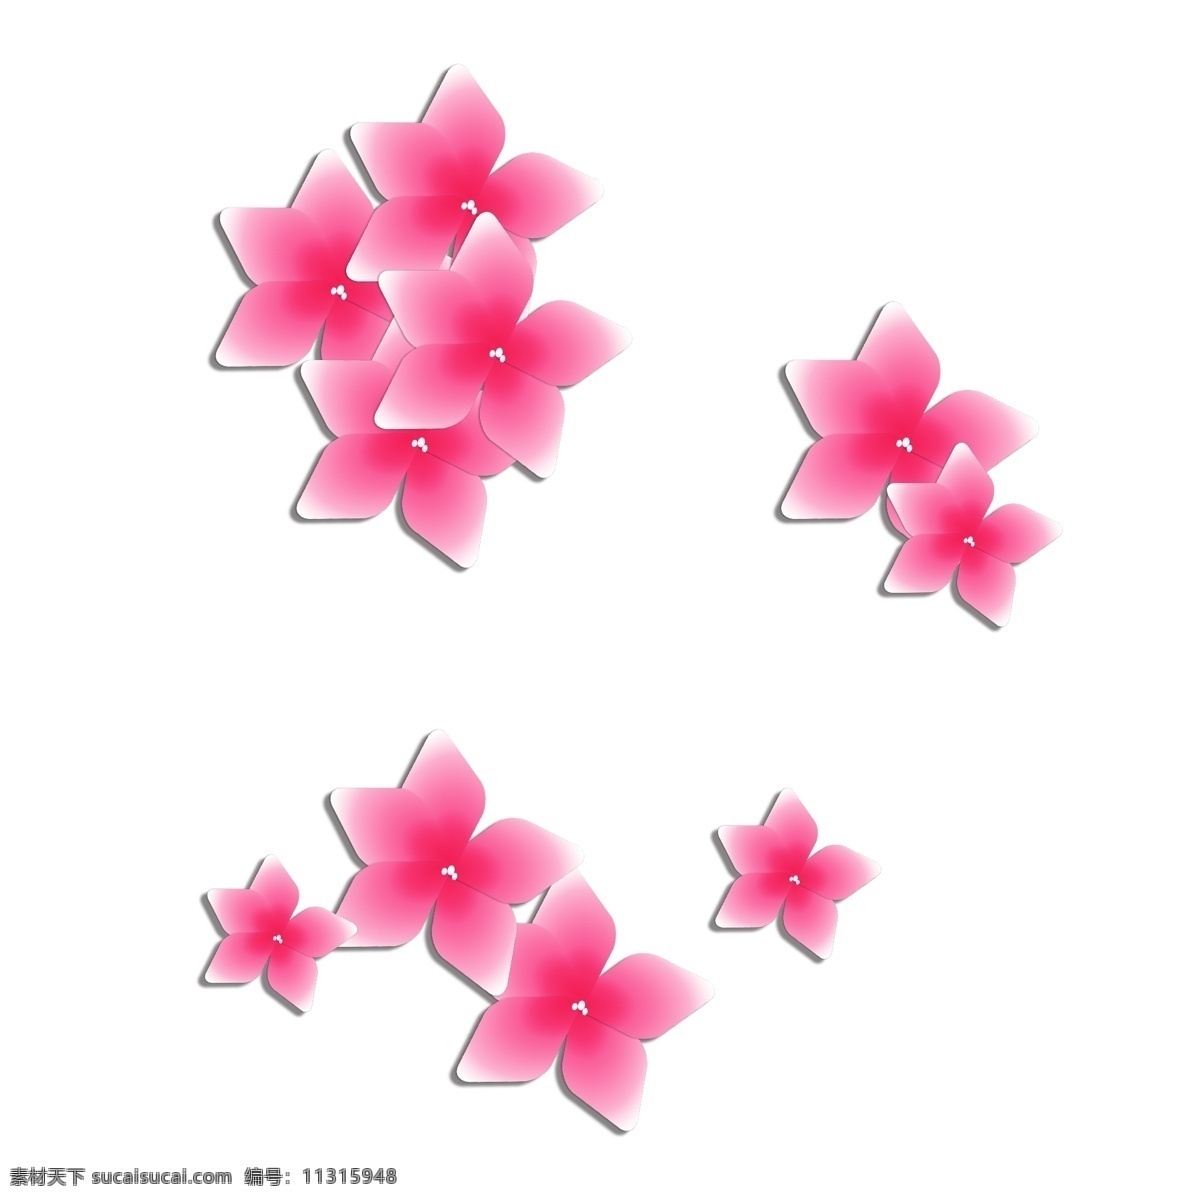 红色 樱花 粉红色 透明底 花朵 飘落 免抠 装饰设计 花瓣 平面设计 原创 漂浮 室内设计 装饰